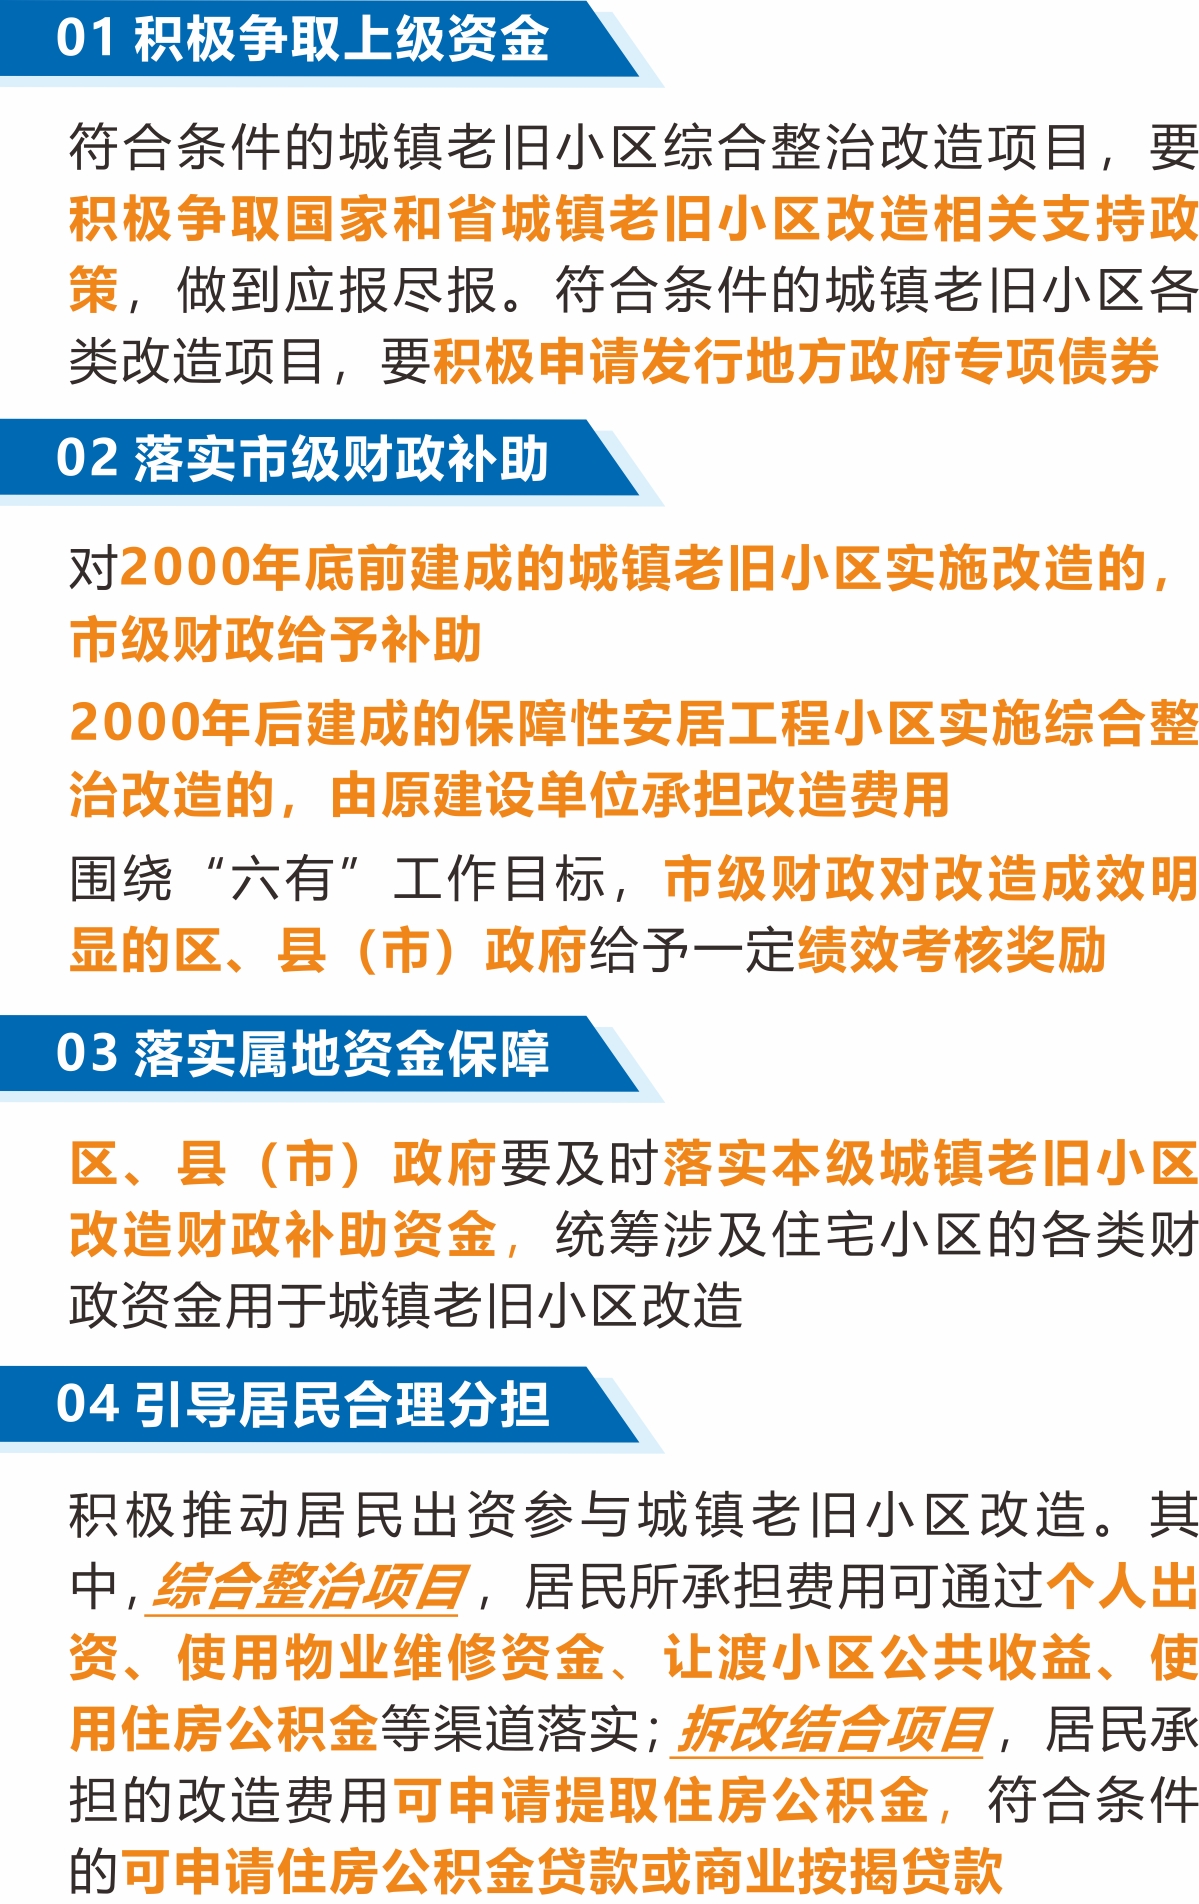 《杭州市人民政府办公厅关于全面推进城镇老旧小区改造工作的实施意见》解读